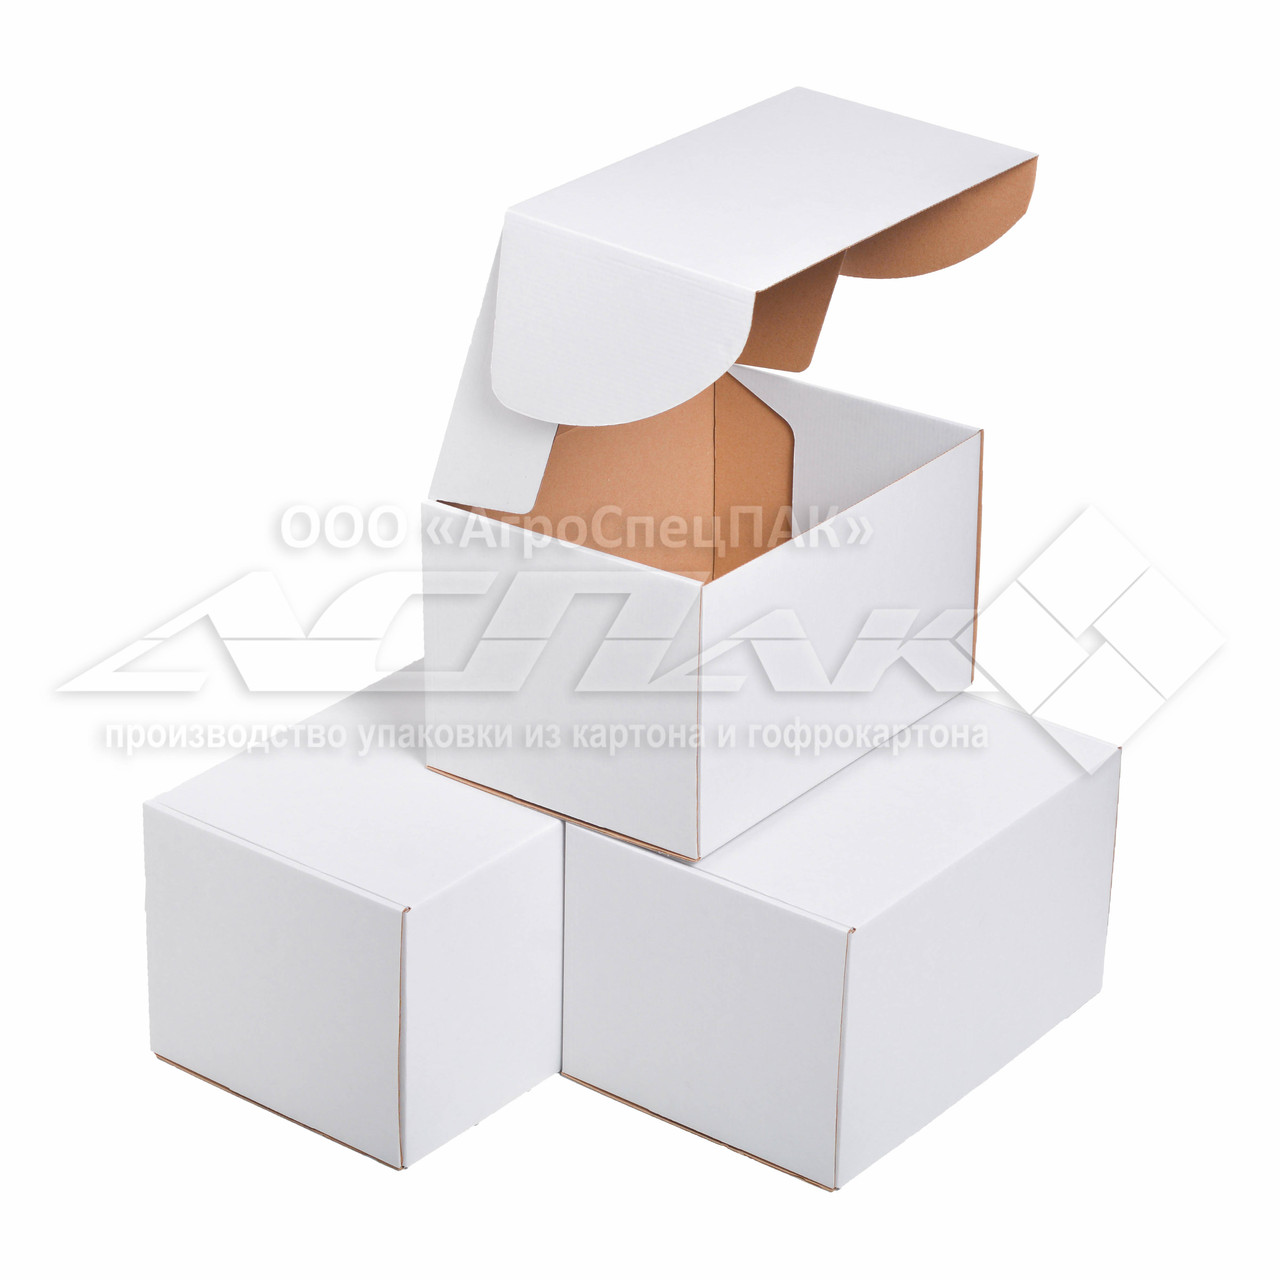 Картонна коробка 310х220х190 біла. Коробка формату А4., фото 1